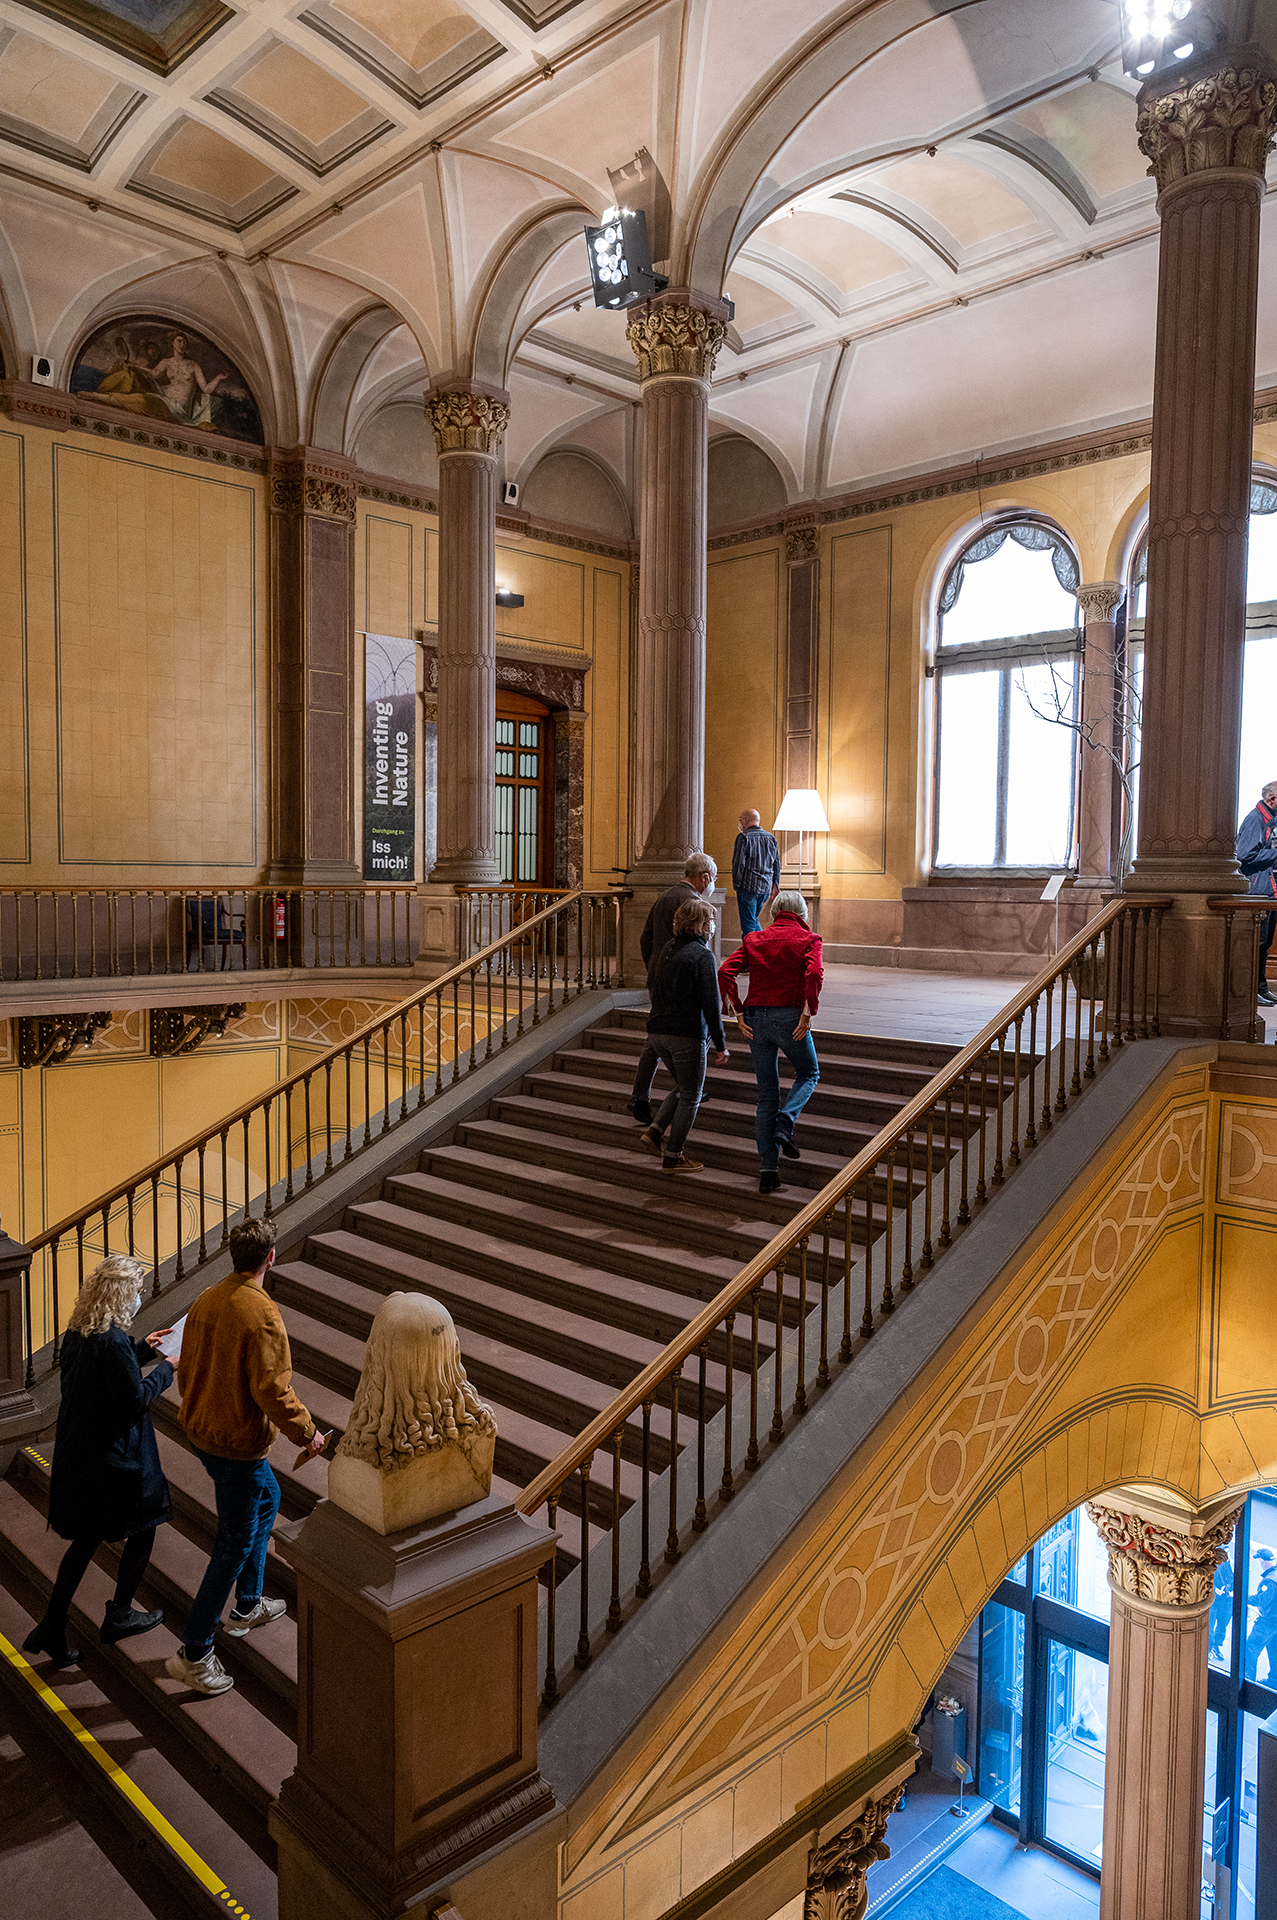 Blick auf das Treppenhaus der Kunsthalle, durch das mehrere Besucher*innnen nach oben in Richtung der Ausstellungsräume laufen.